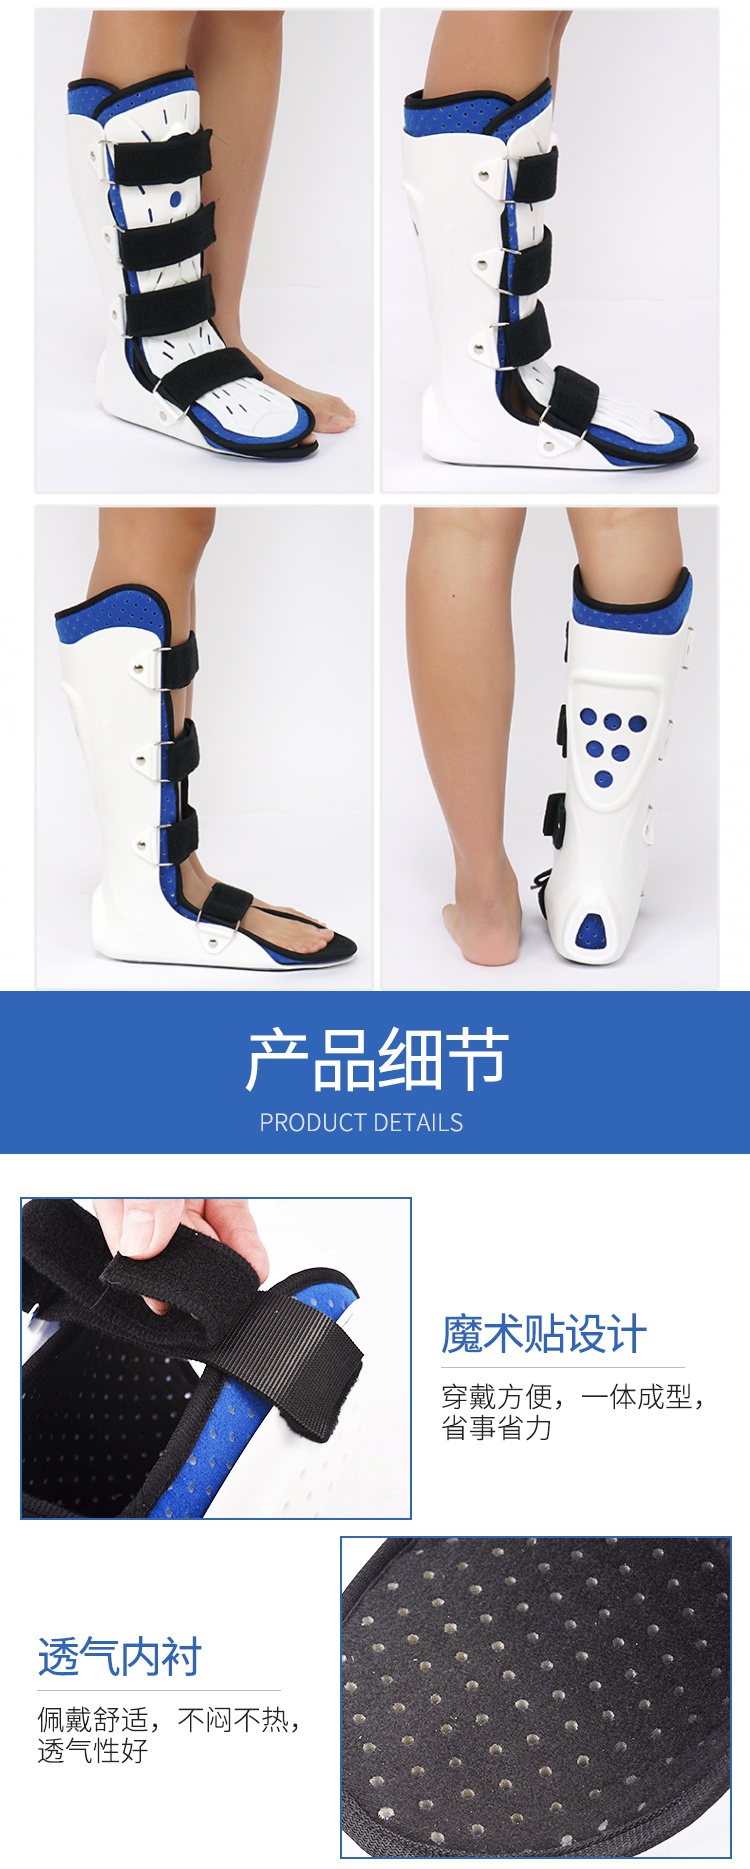 踝关节固定支具足托脚托矫正器小腿跖骨脚踝护具骨折扭伤康复支架